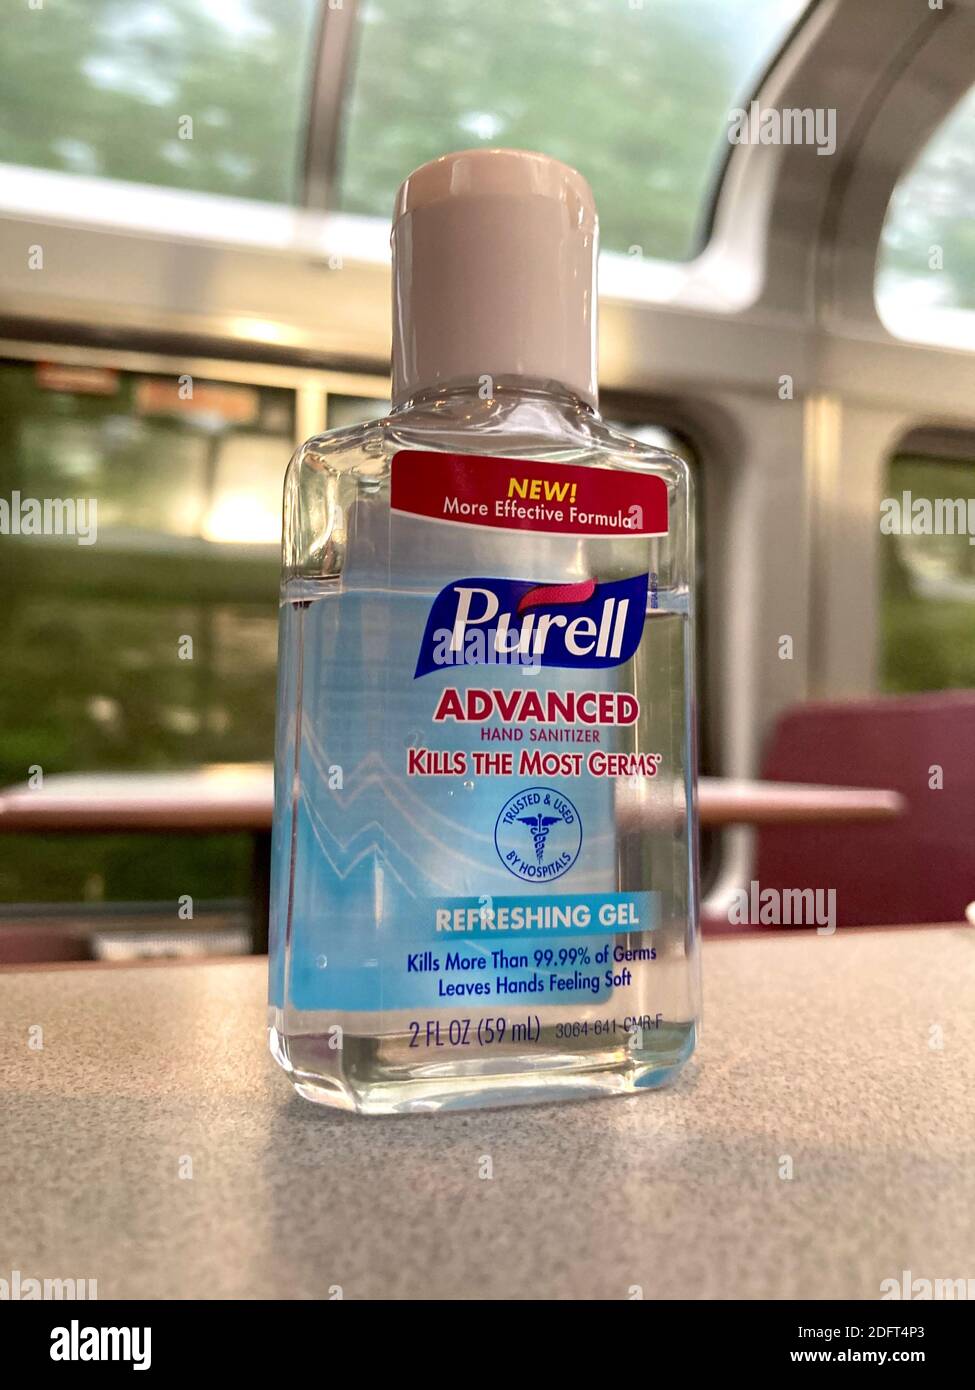 Gros plan d'une petite bouteille de désinfectant pour les mains de marque Purell laissée sur une table dans le salon d'un train Amtrak. Banque D'Images